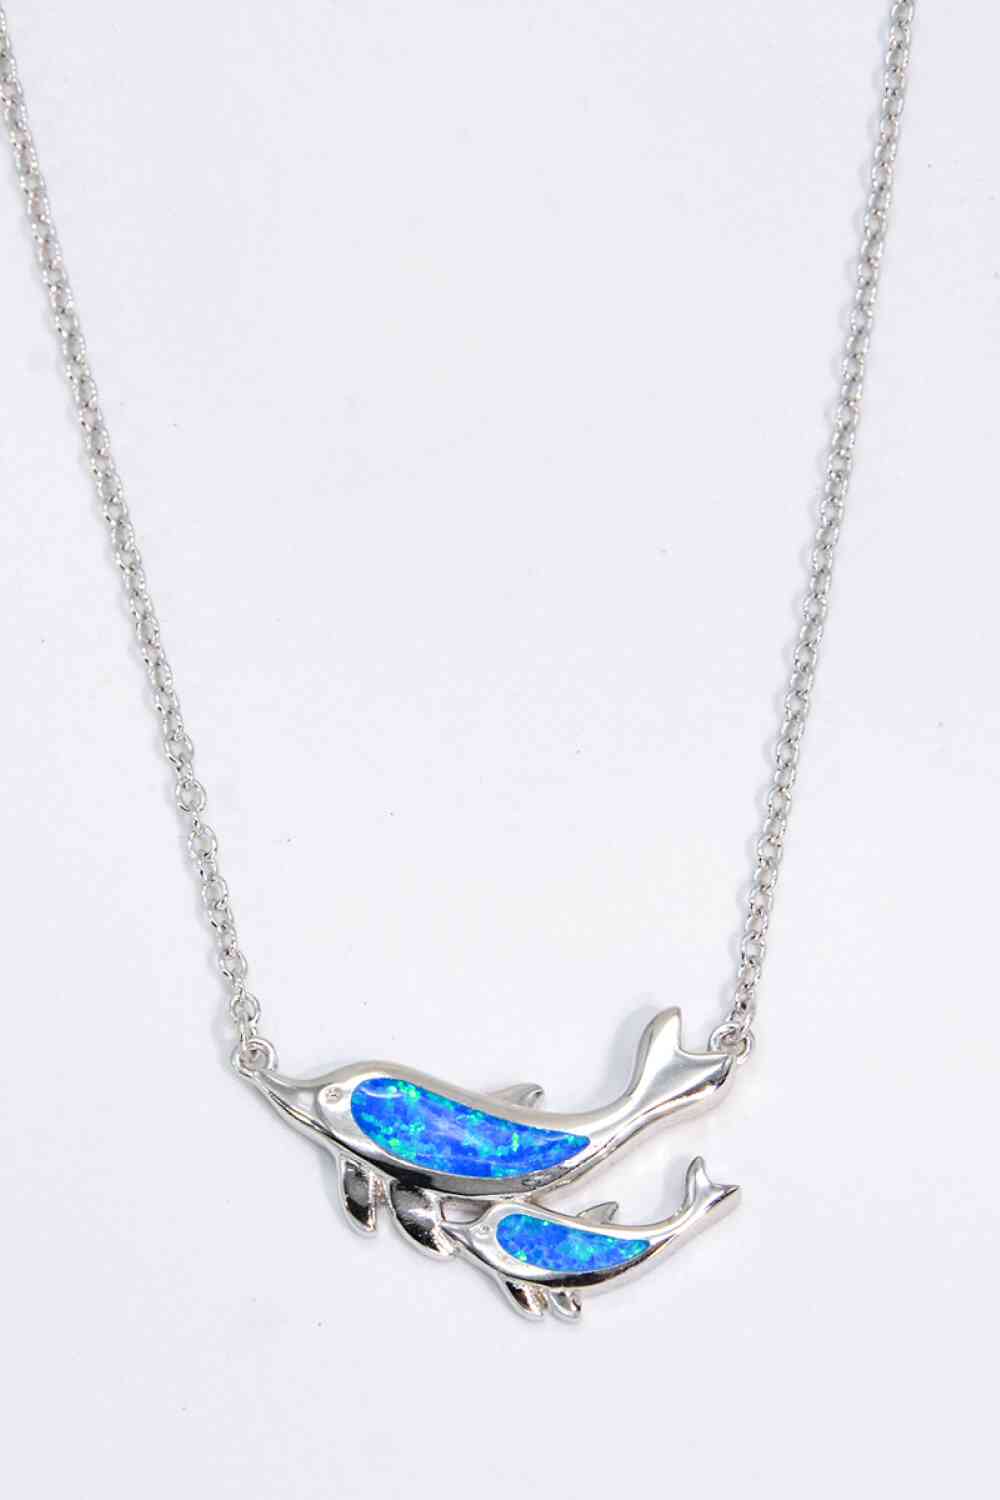 Opal Dolphin Chain-Link Necklace - Pahabu - Women Fashion & Jewelry